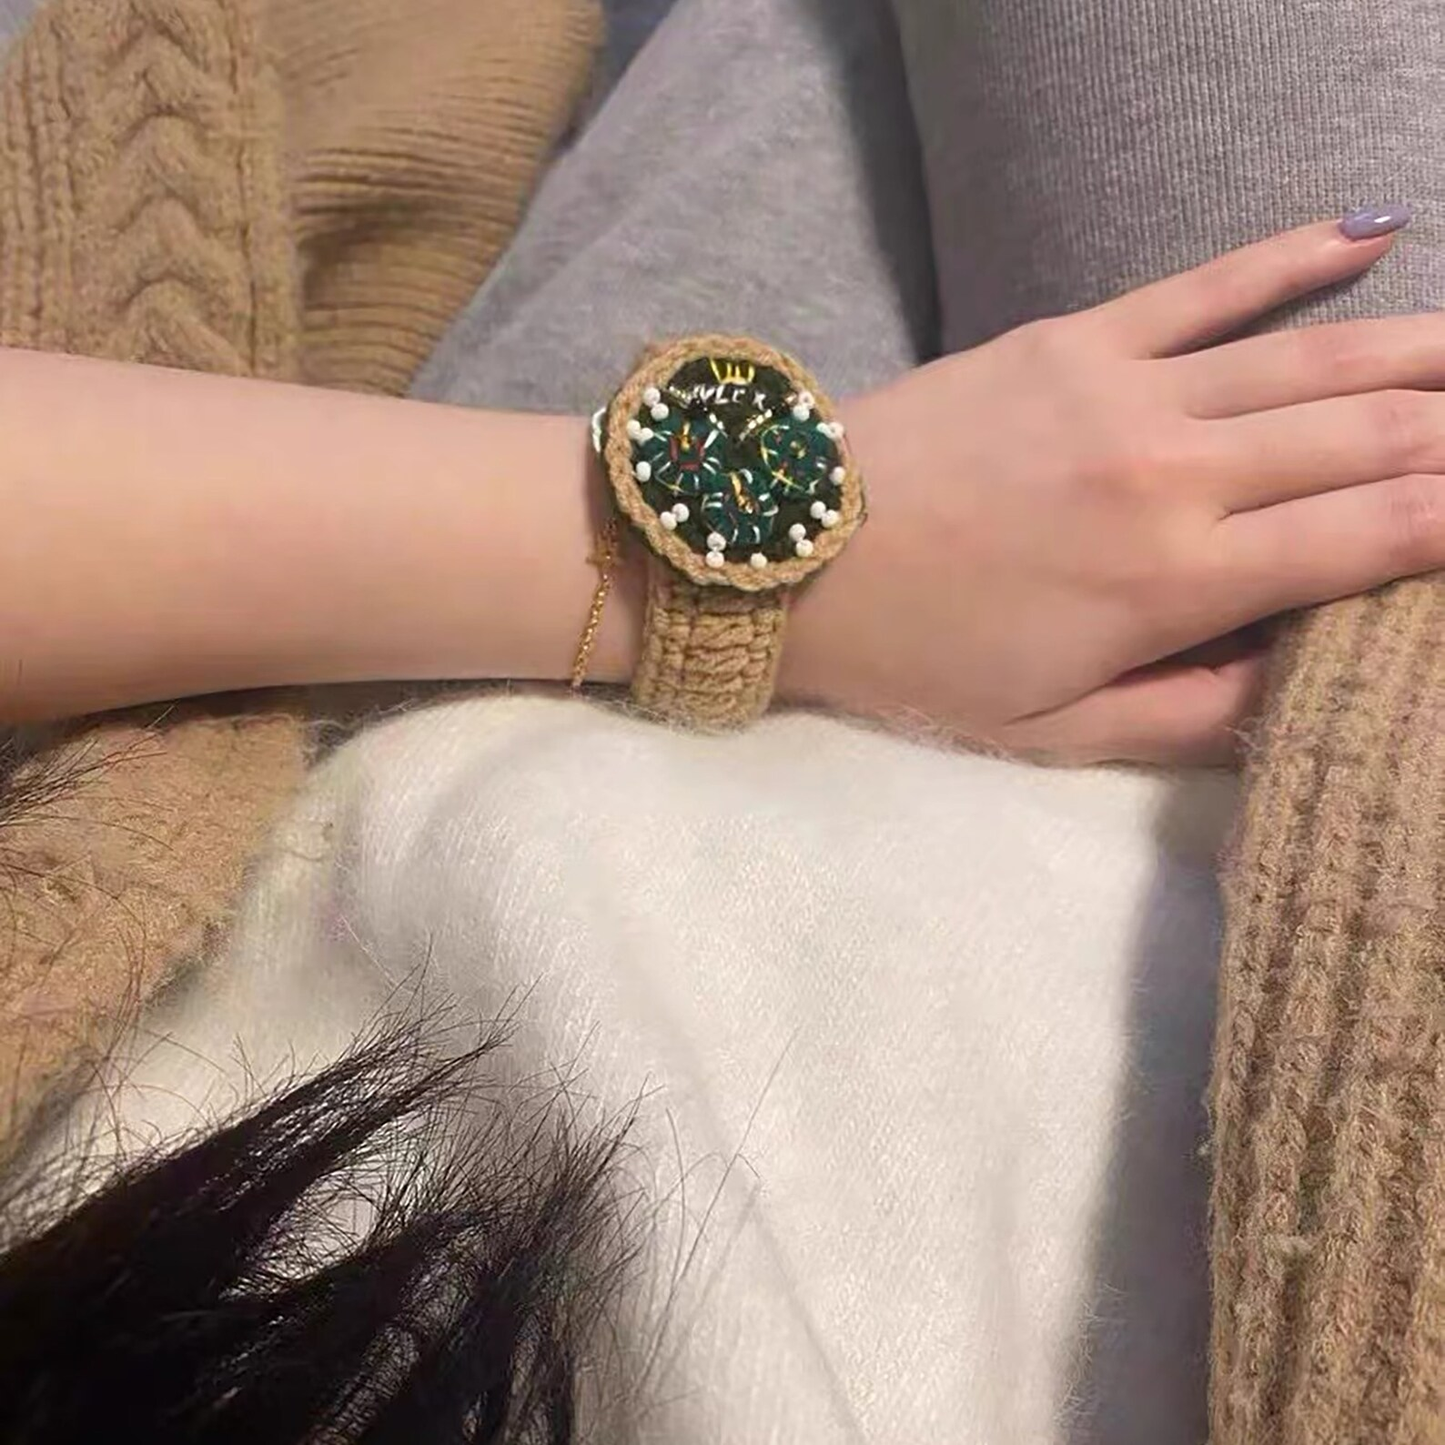 Handmade Crochet Wrist Watch